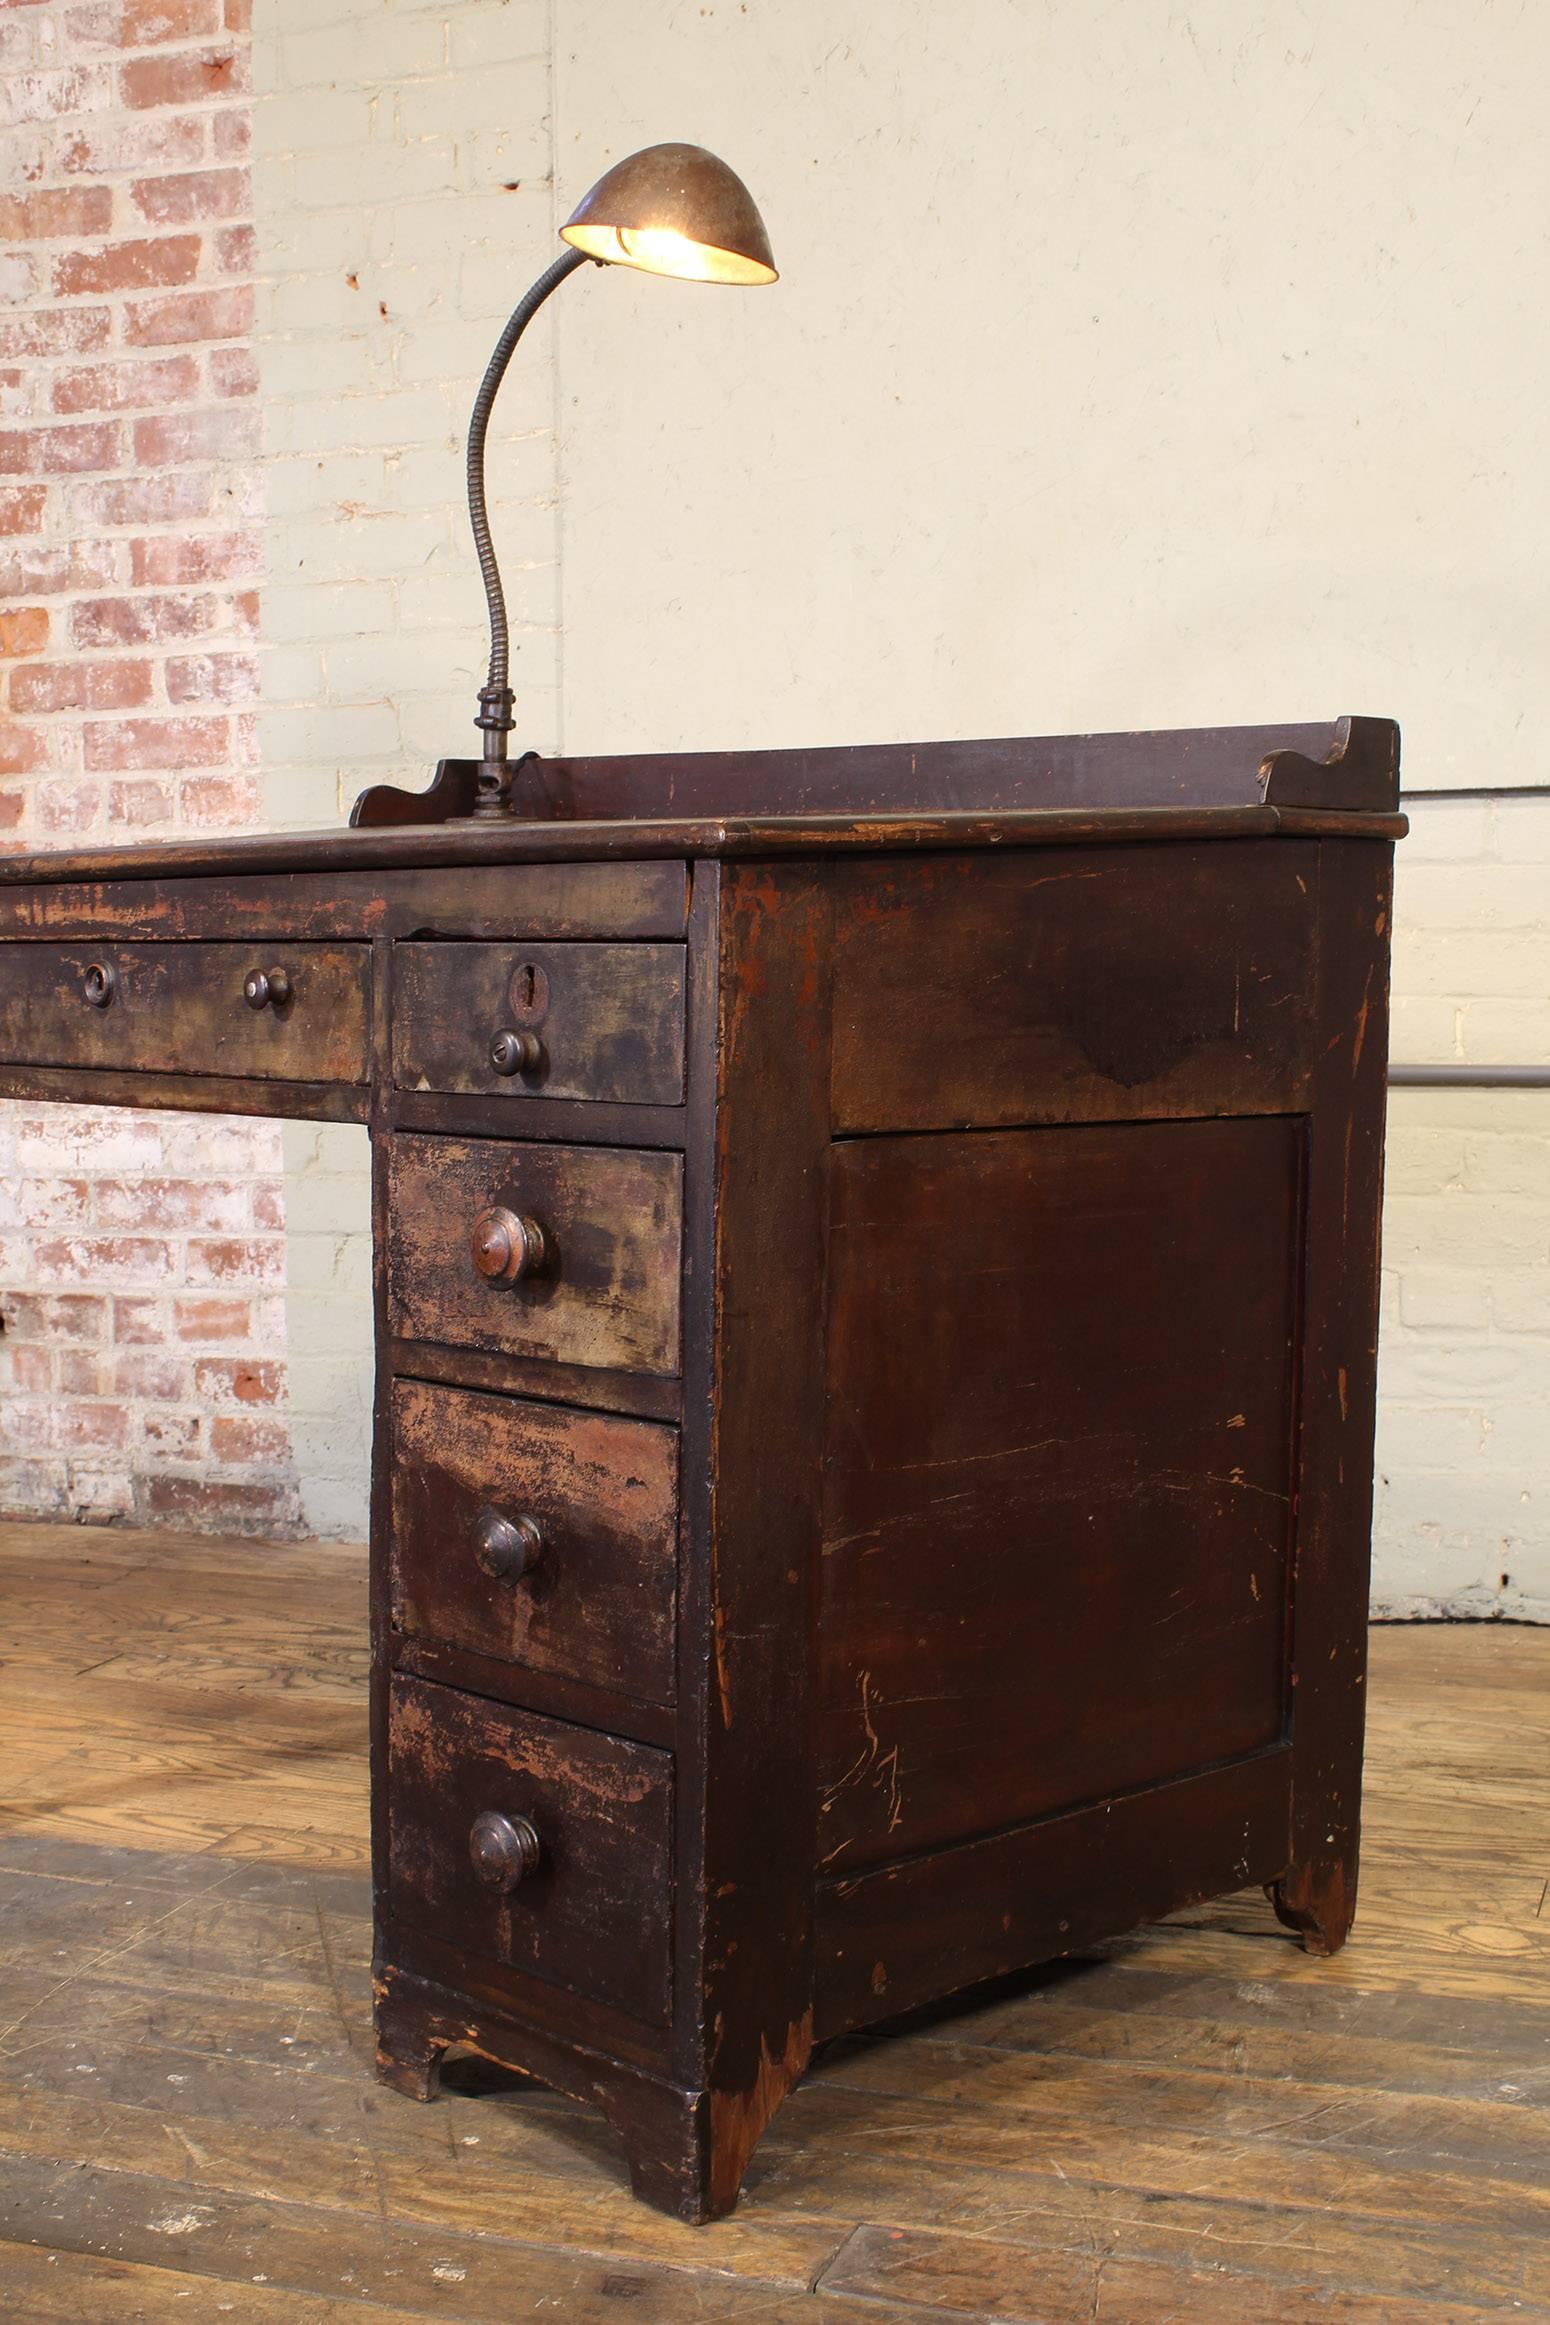 Vintage Industrial Clerk's Desk Workbench with Adjustable Goose-Neck Task Light 11